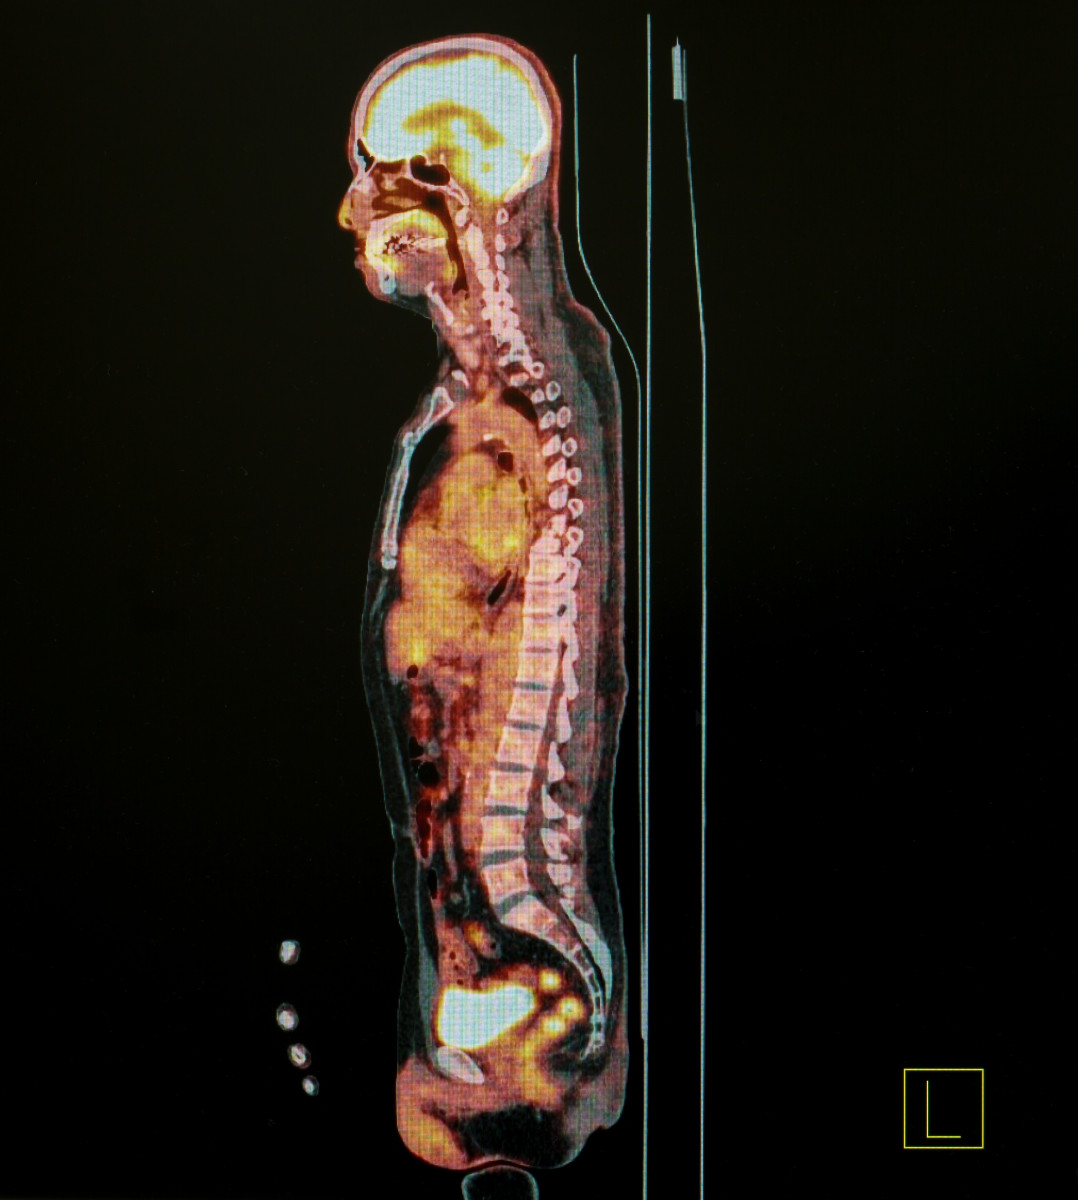 Spinal MRI scans